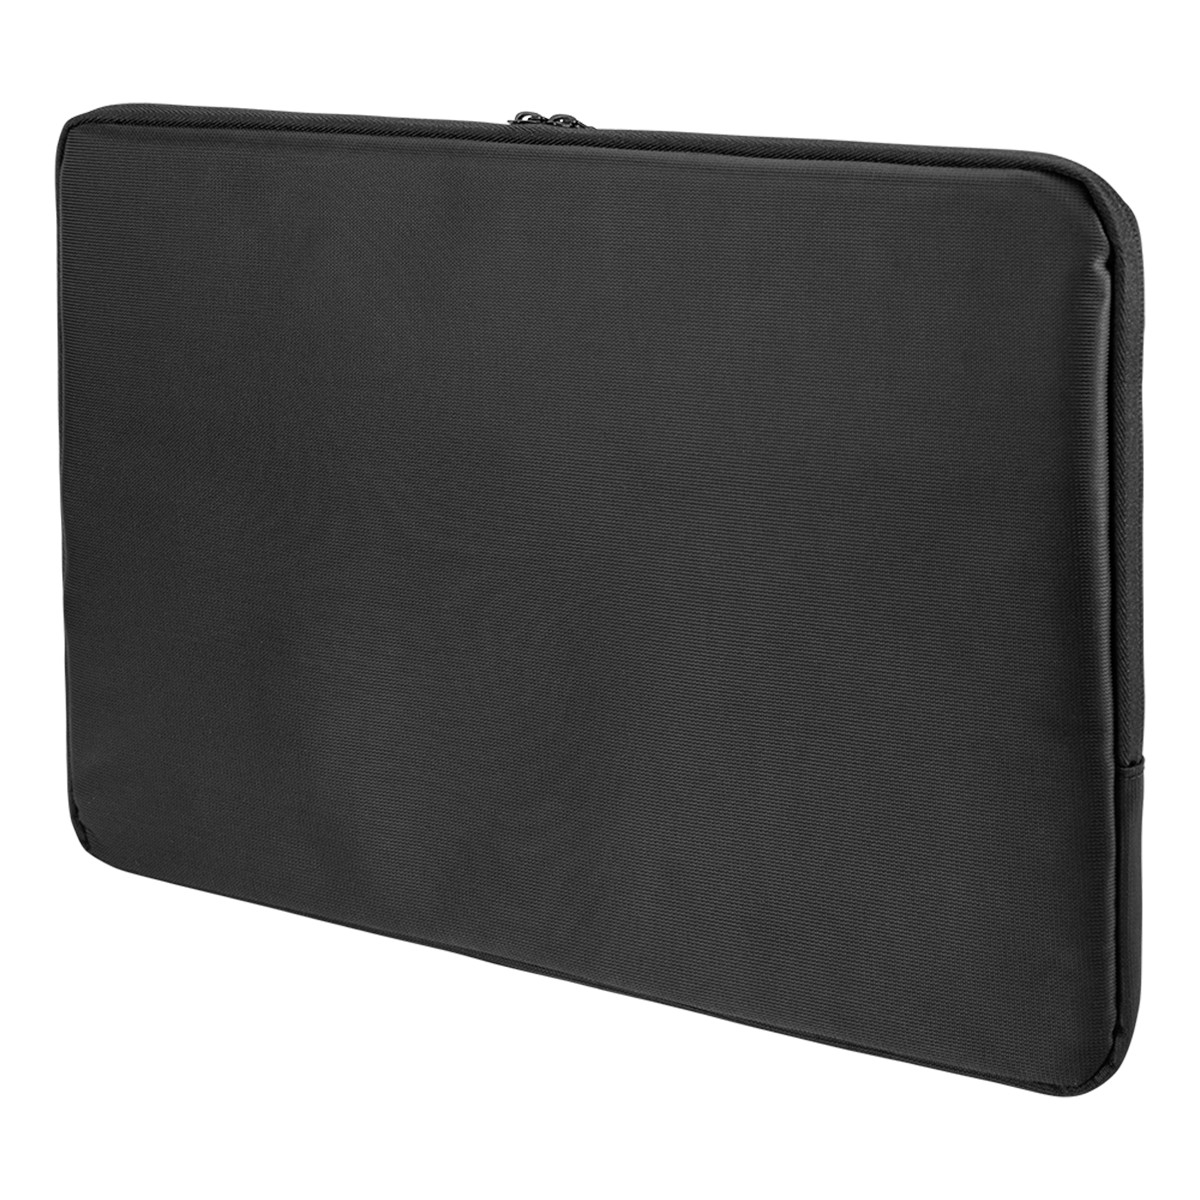 Deltaco Laptopfodral för laptops upp till 12 tum, svart